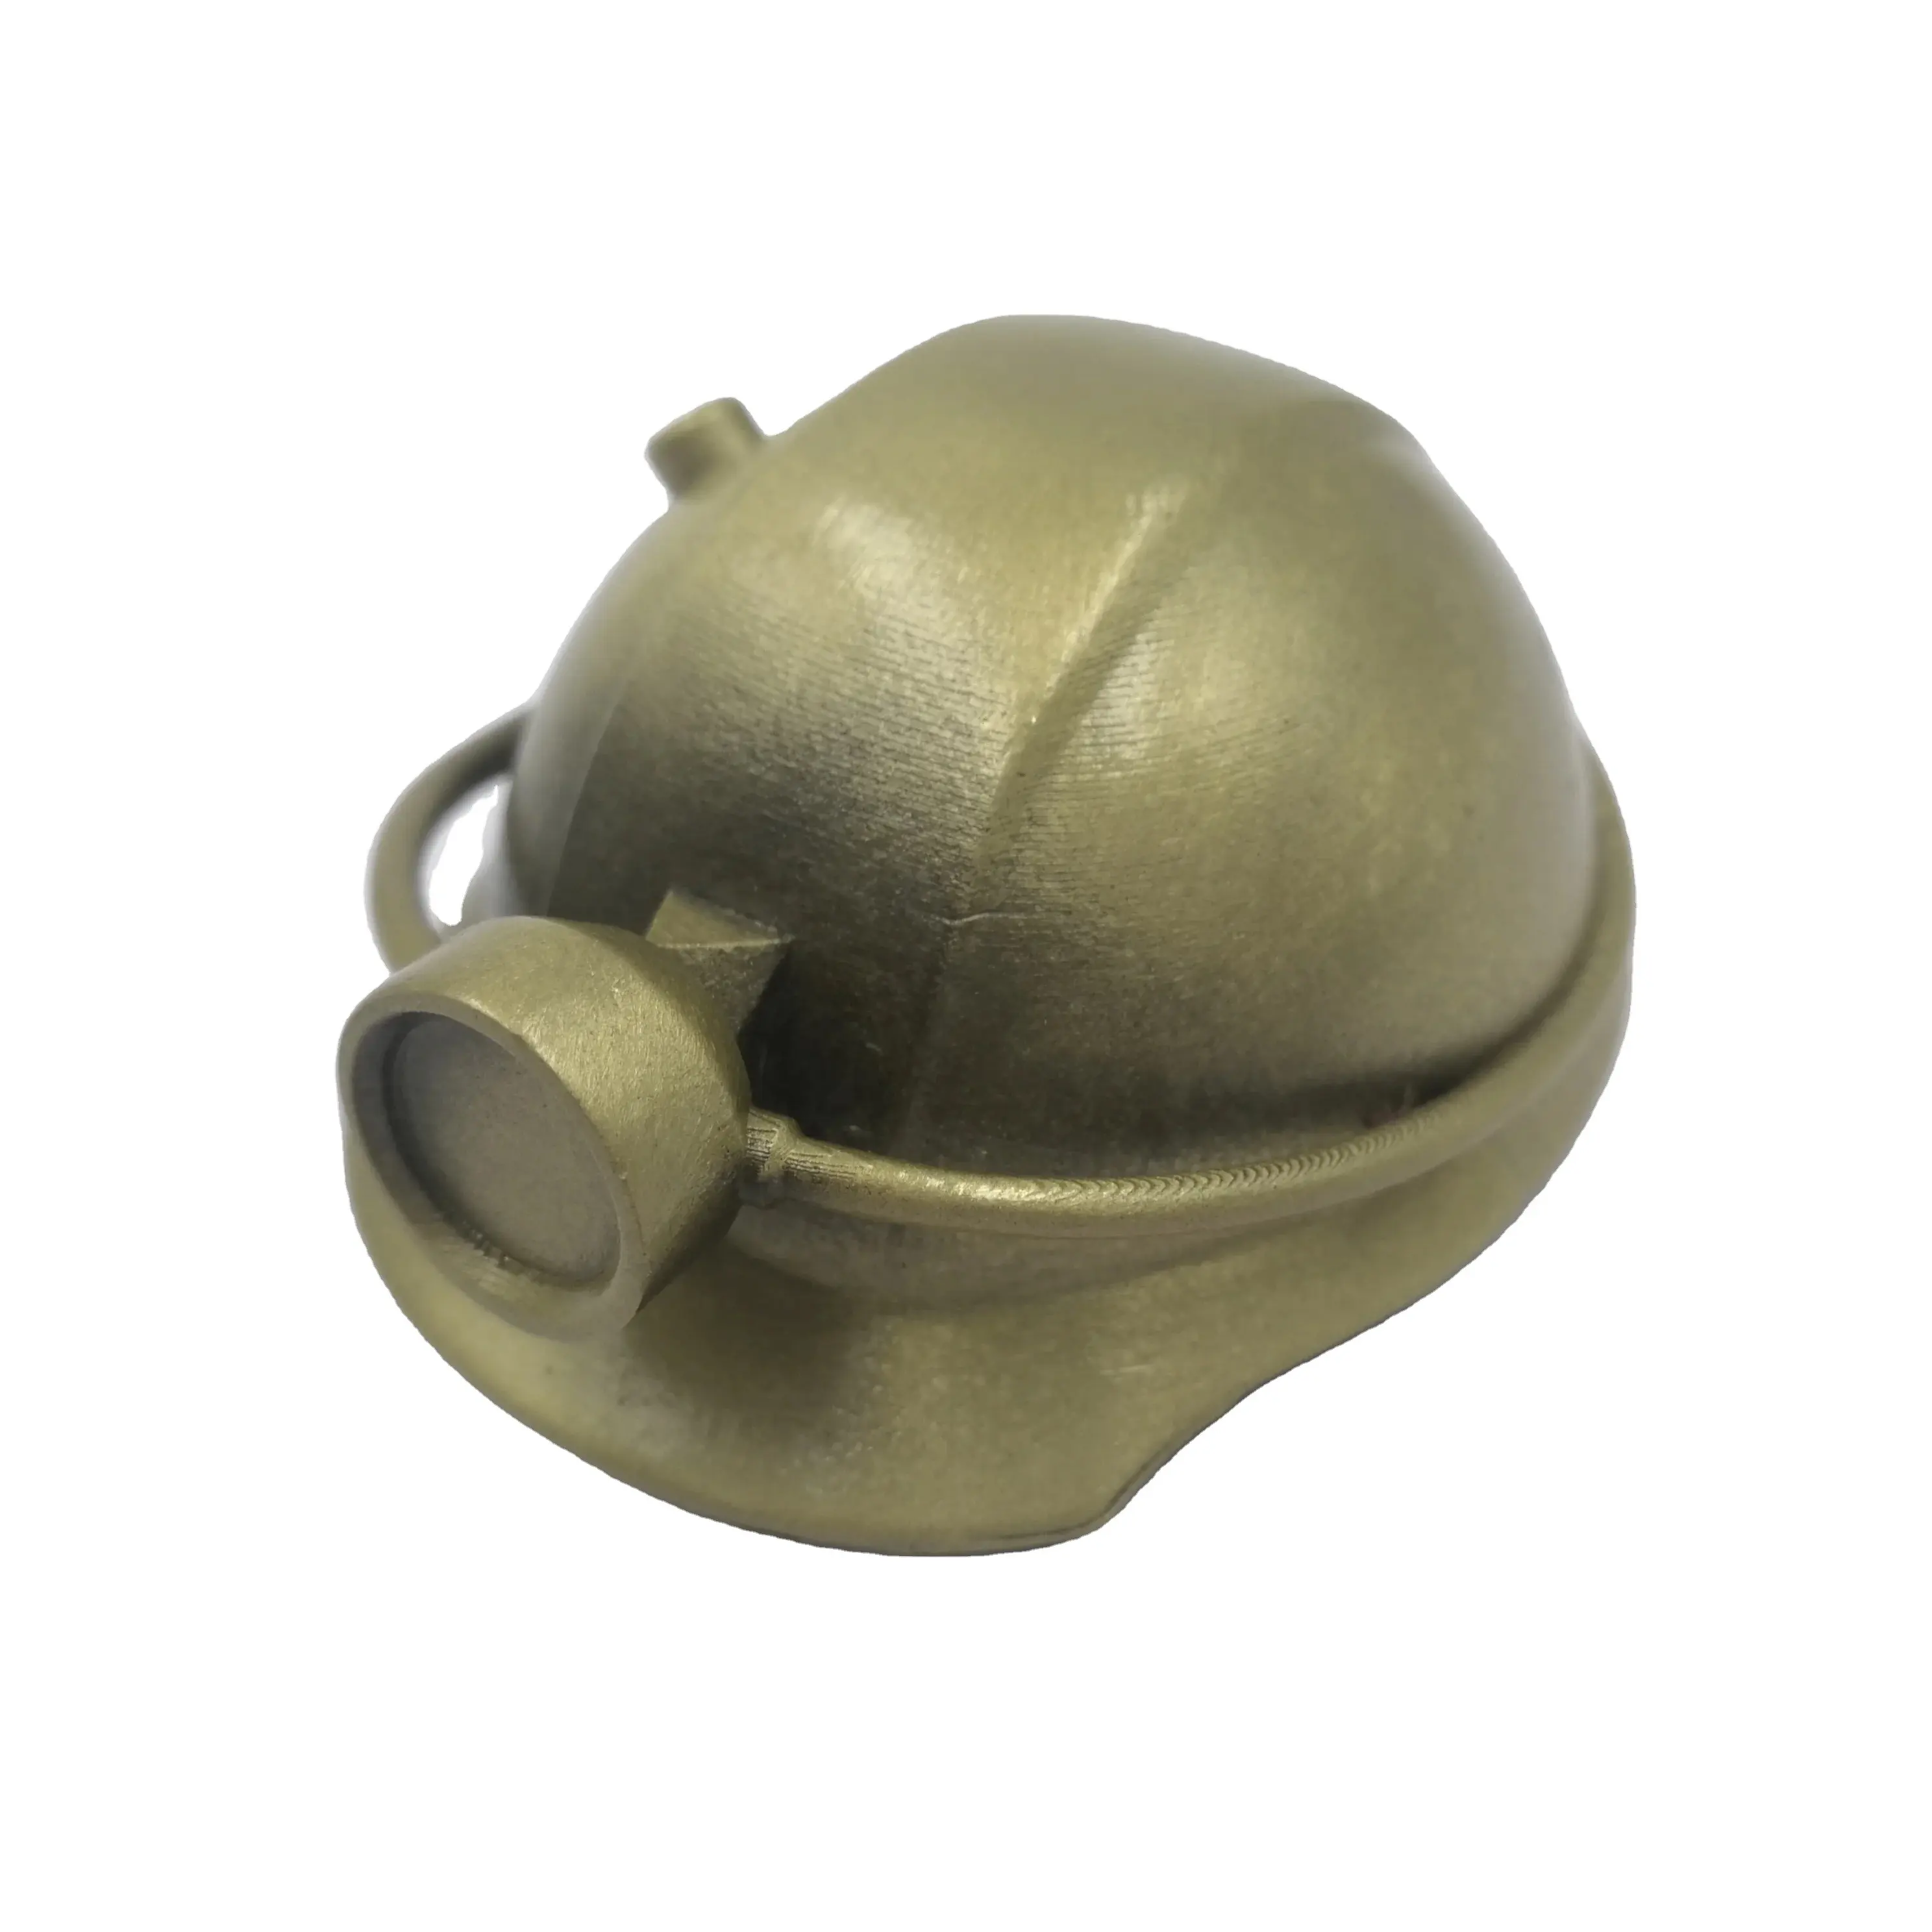 Özel Metal Mini kask anahtarlık antika kaplama 3D Metal kask dekorasyon Mini maden kömür madeni hatıra için emniyet kaskı